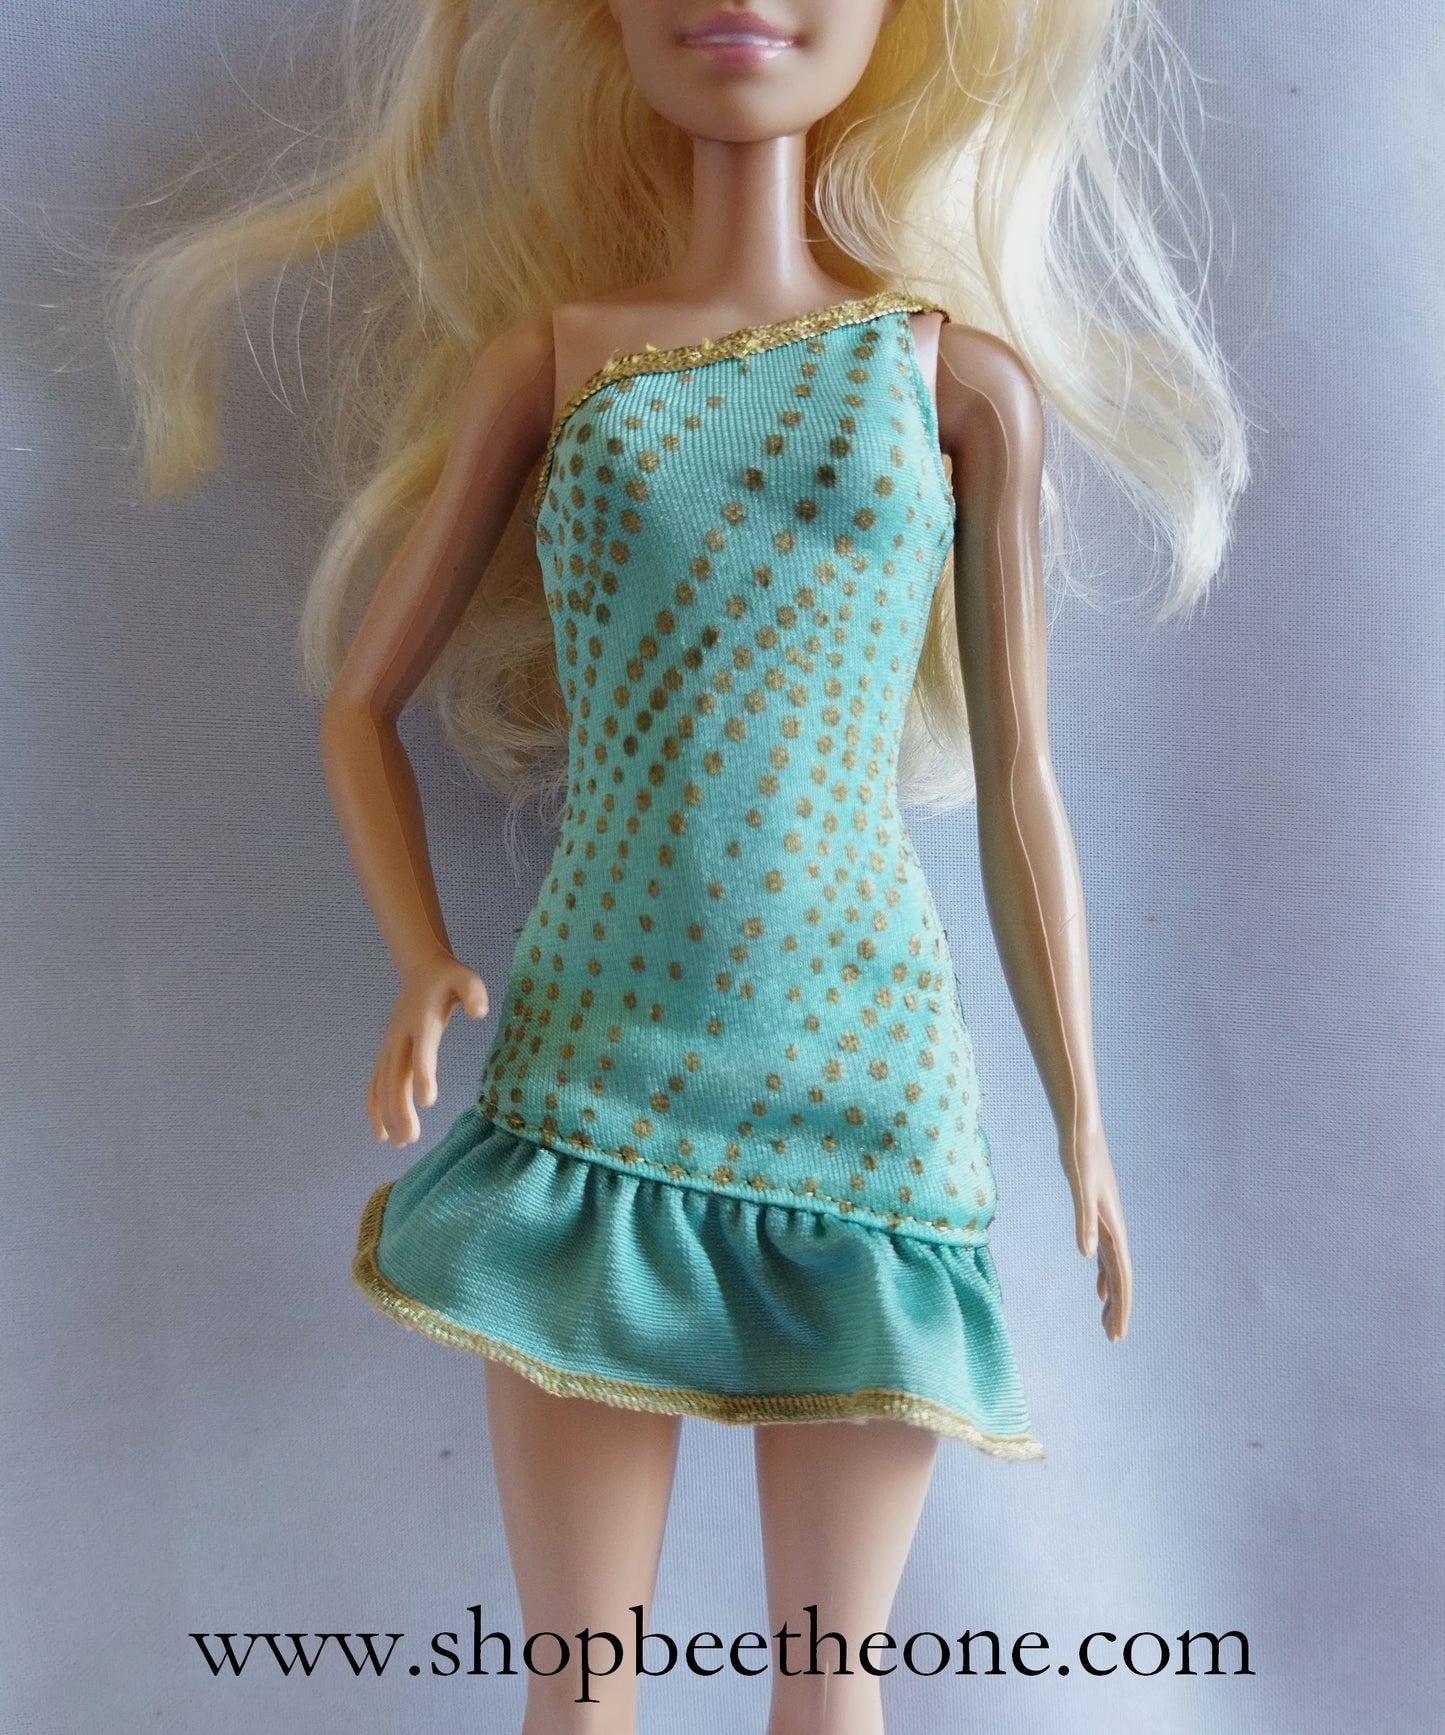 Barbie Fashionistas Habillage Glam R4278 - Mattel 2010 - Robe